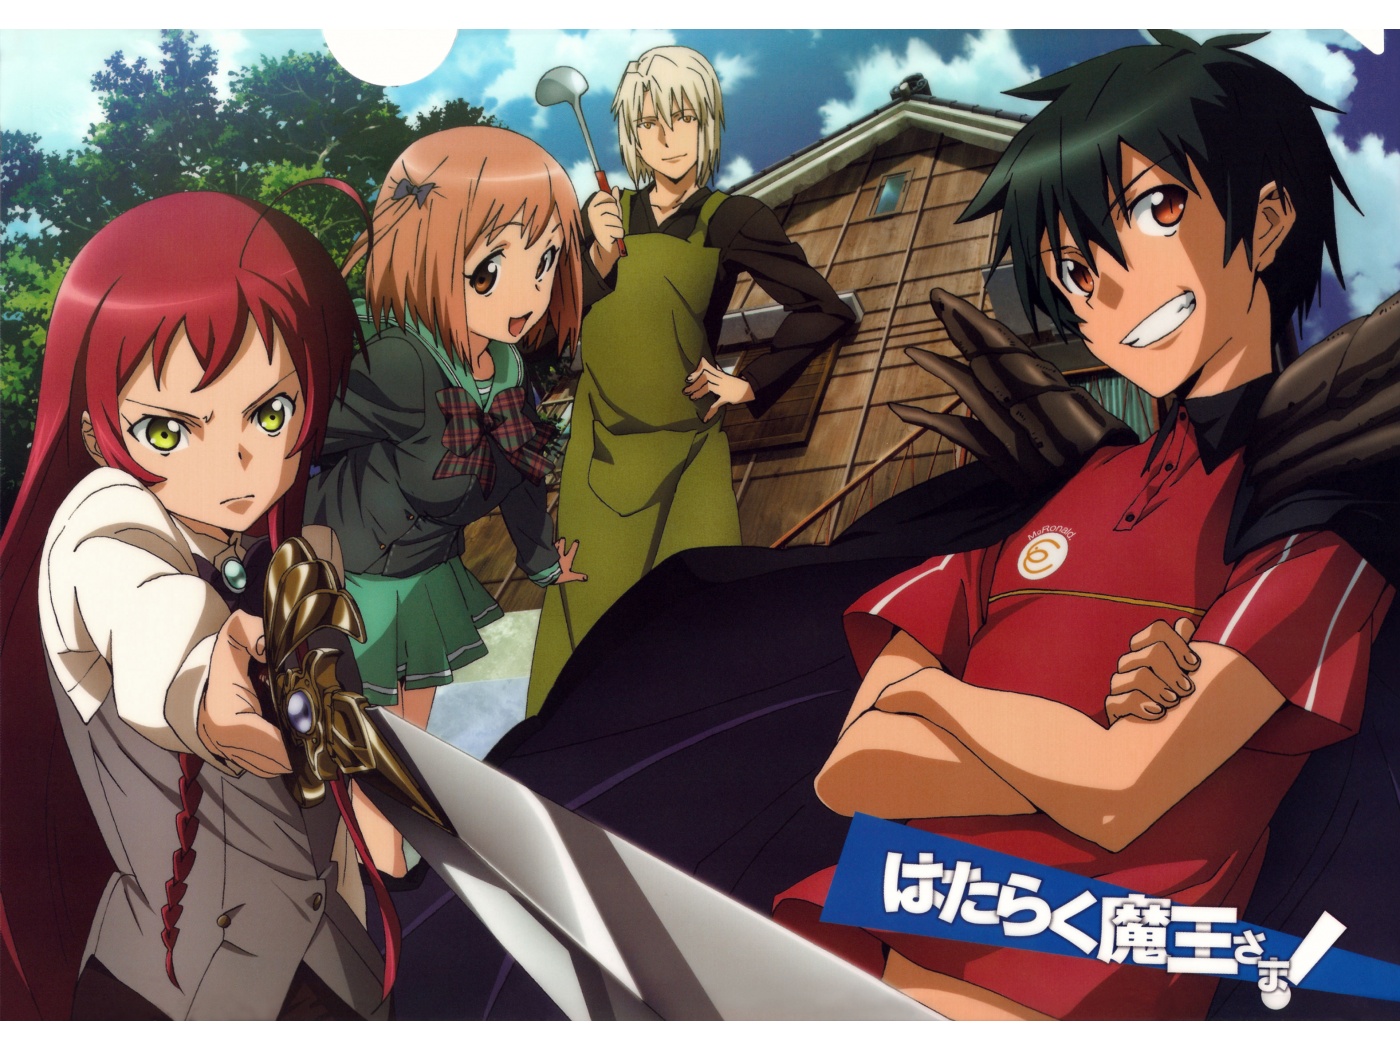 The Devil is a Part-Timer! (Hataraku Mao-sama!): Anime – reviewitweb